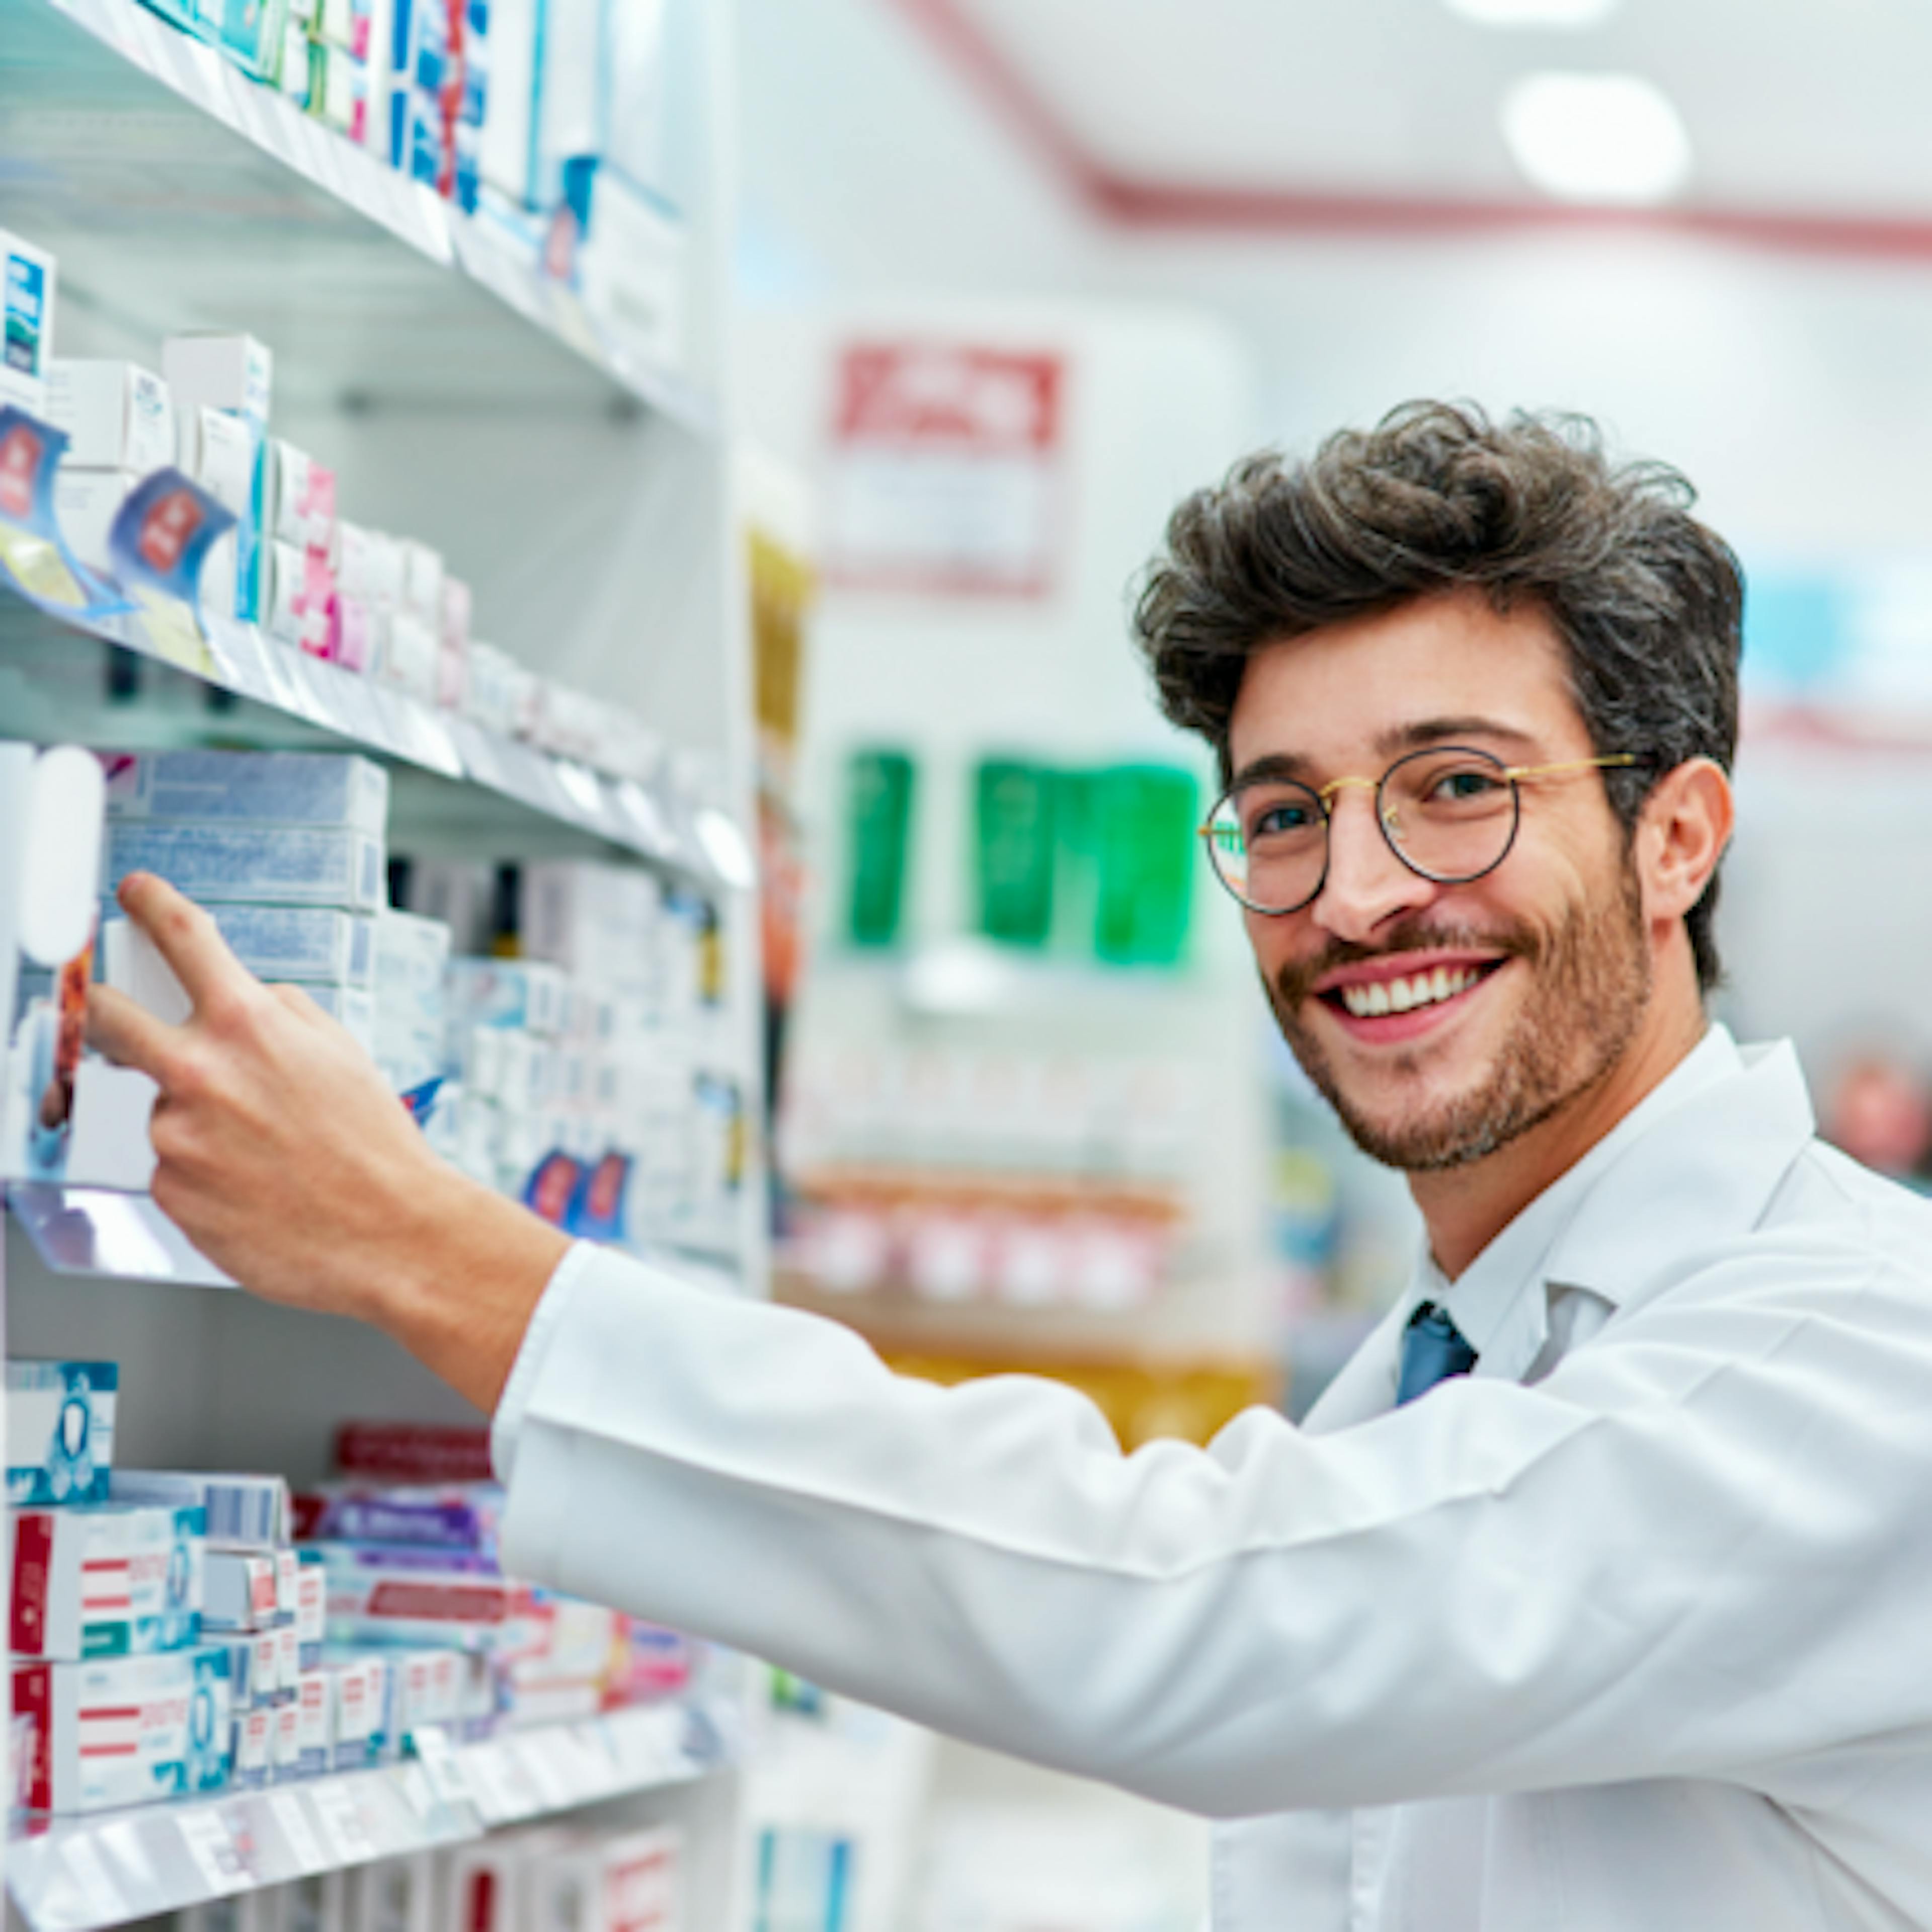 "100% des pharmacies délivrent des médicaments homéopathiques (4)"